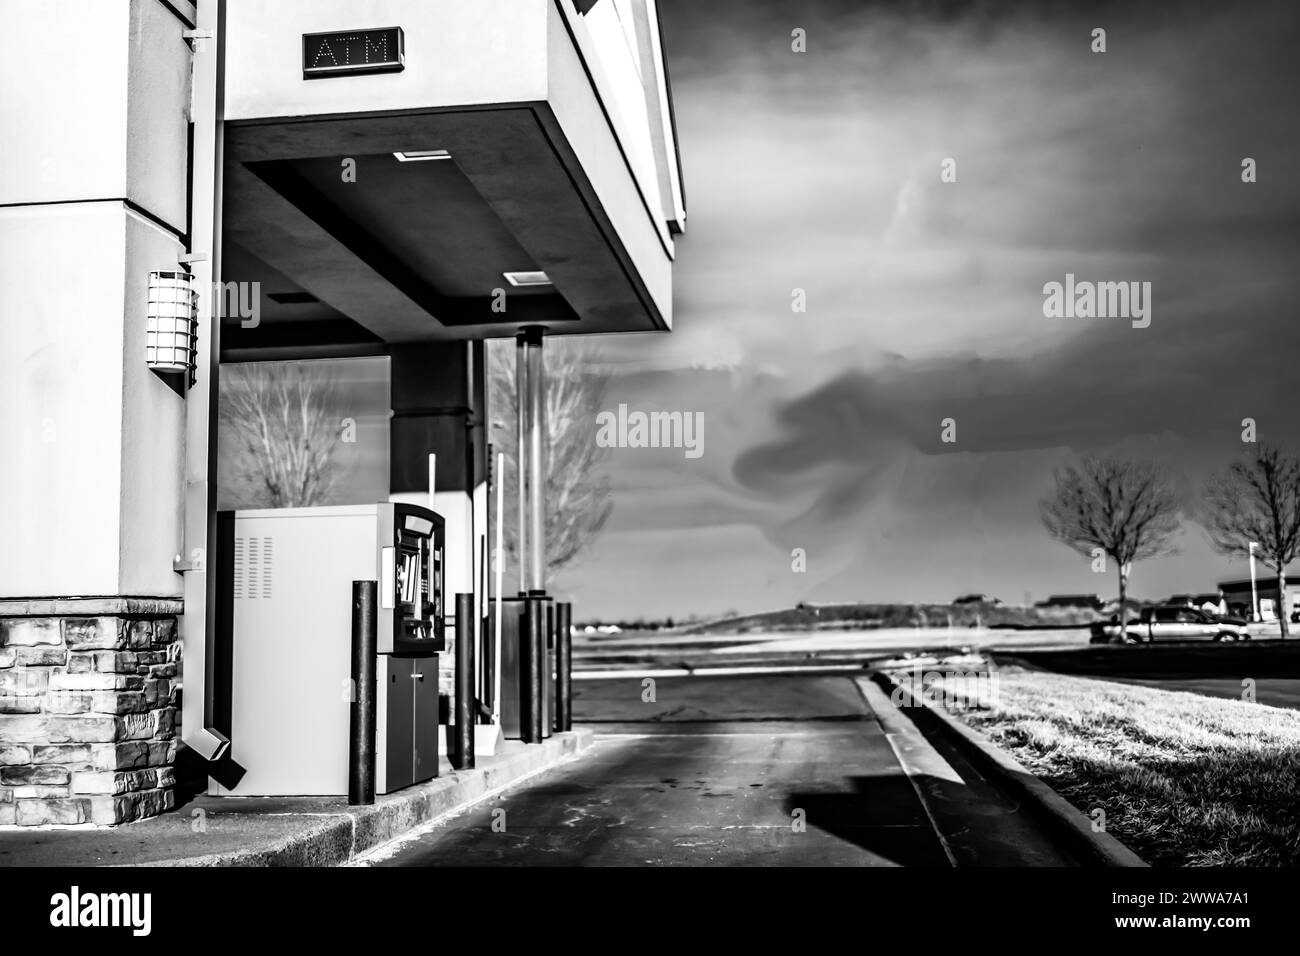 Bankautomat in einer Kleinstadt Stockfoto